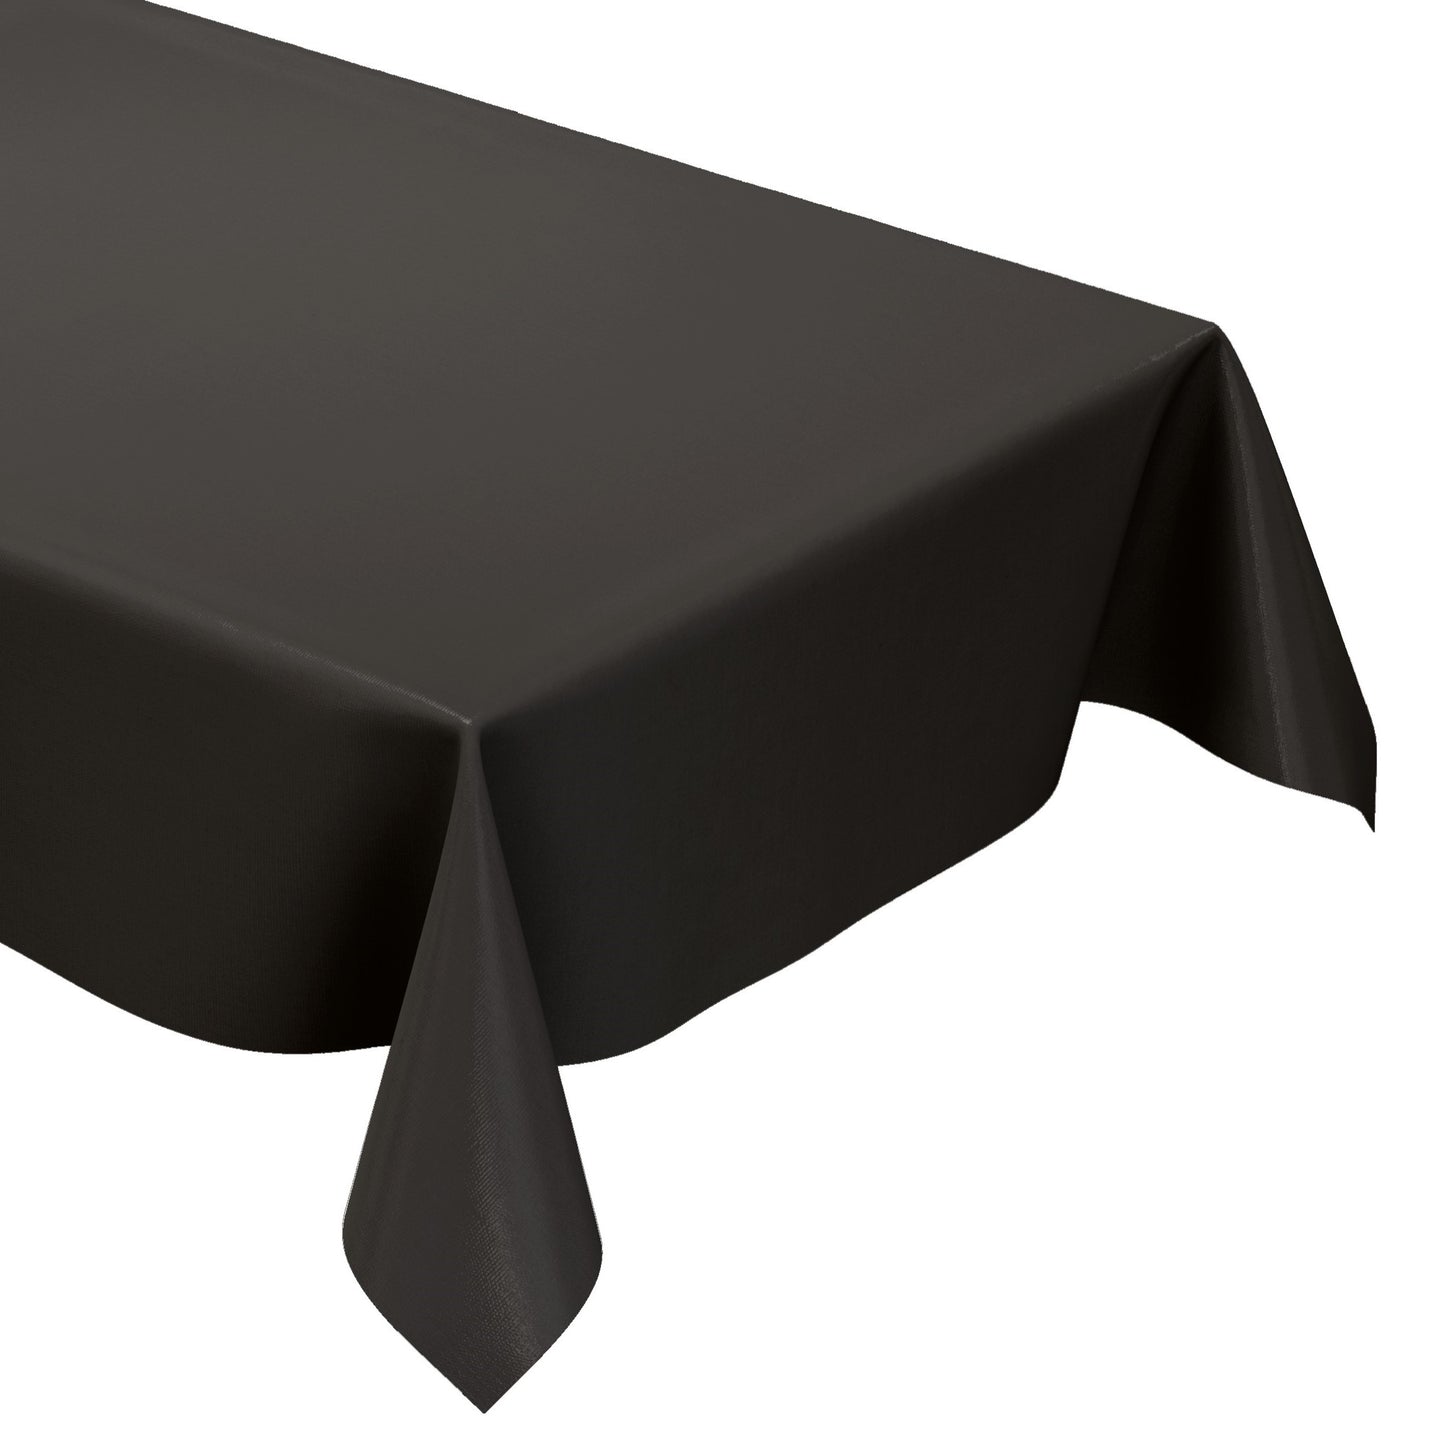 KEVKUS Wachstuch Tischdecke uni 24 einfarbig unifarben schwarz eckig rund oval